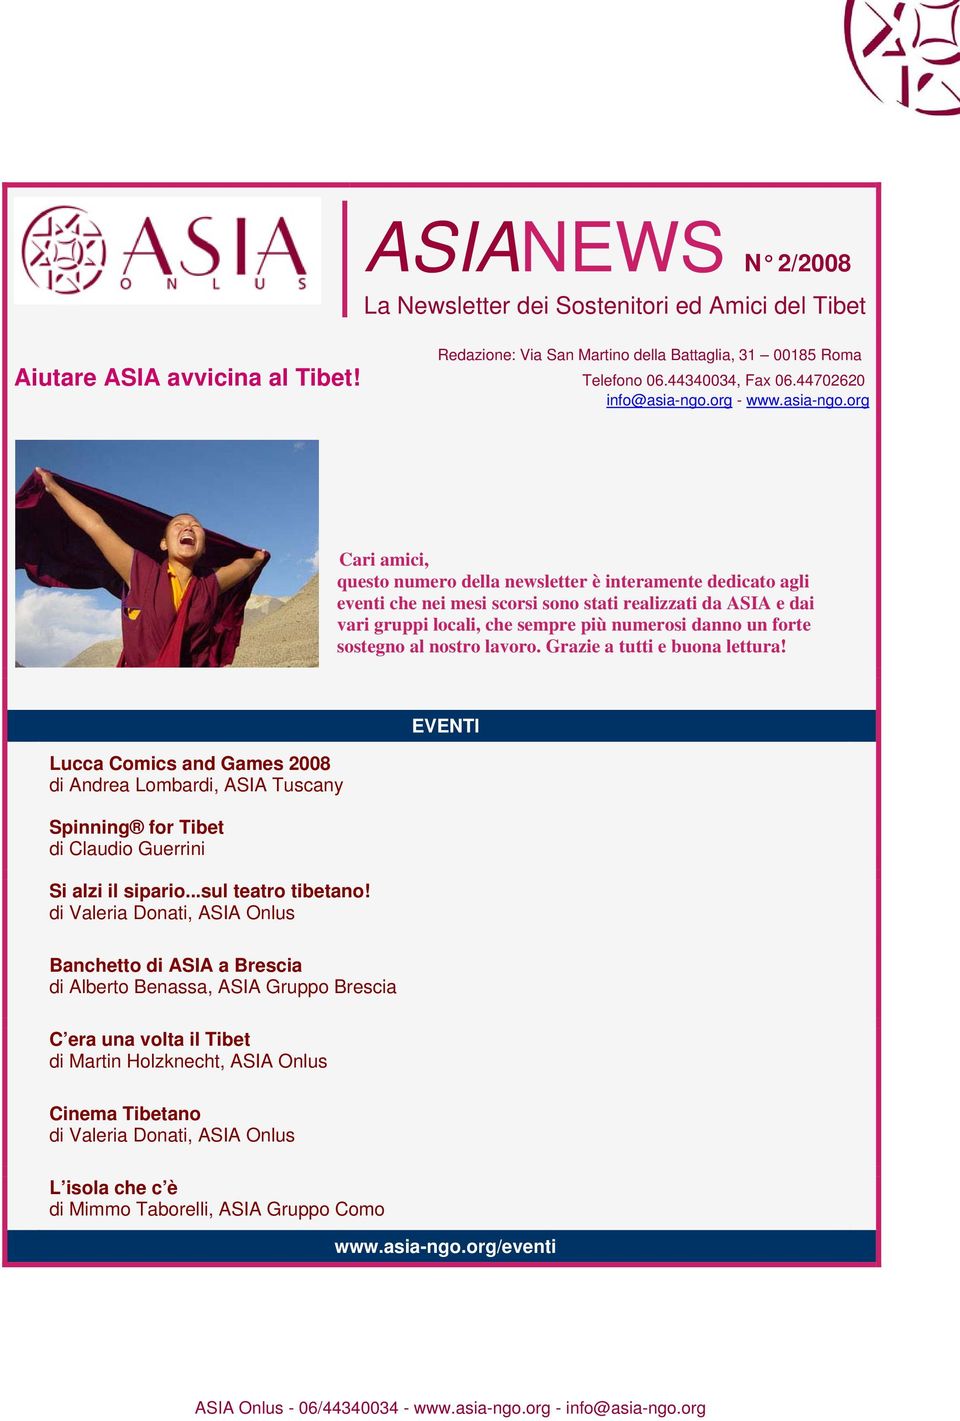 org - www.asia-ngo.